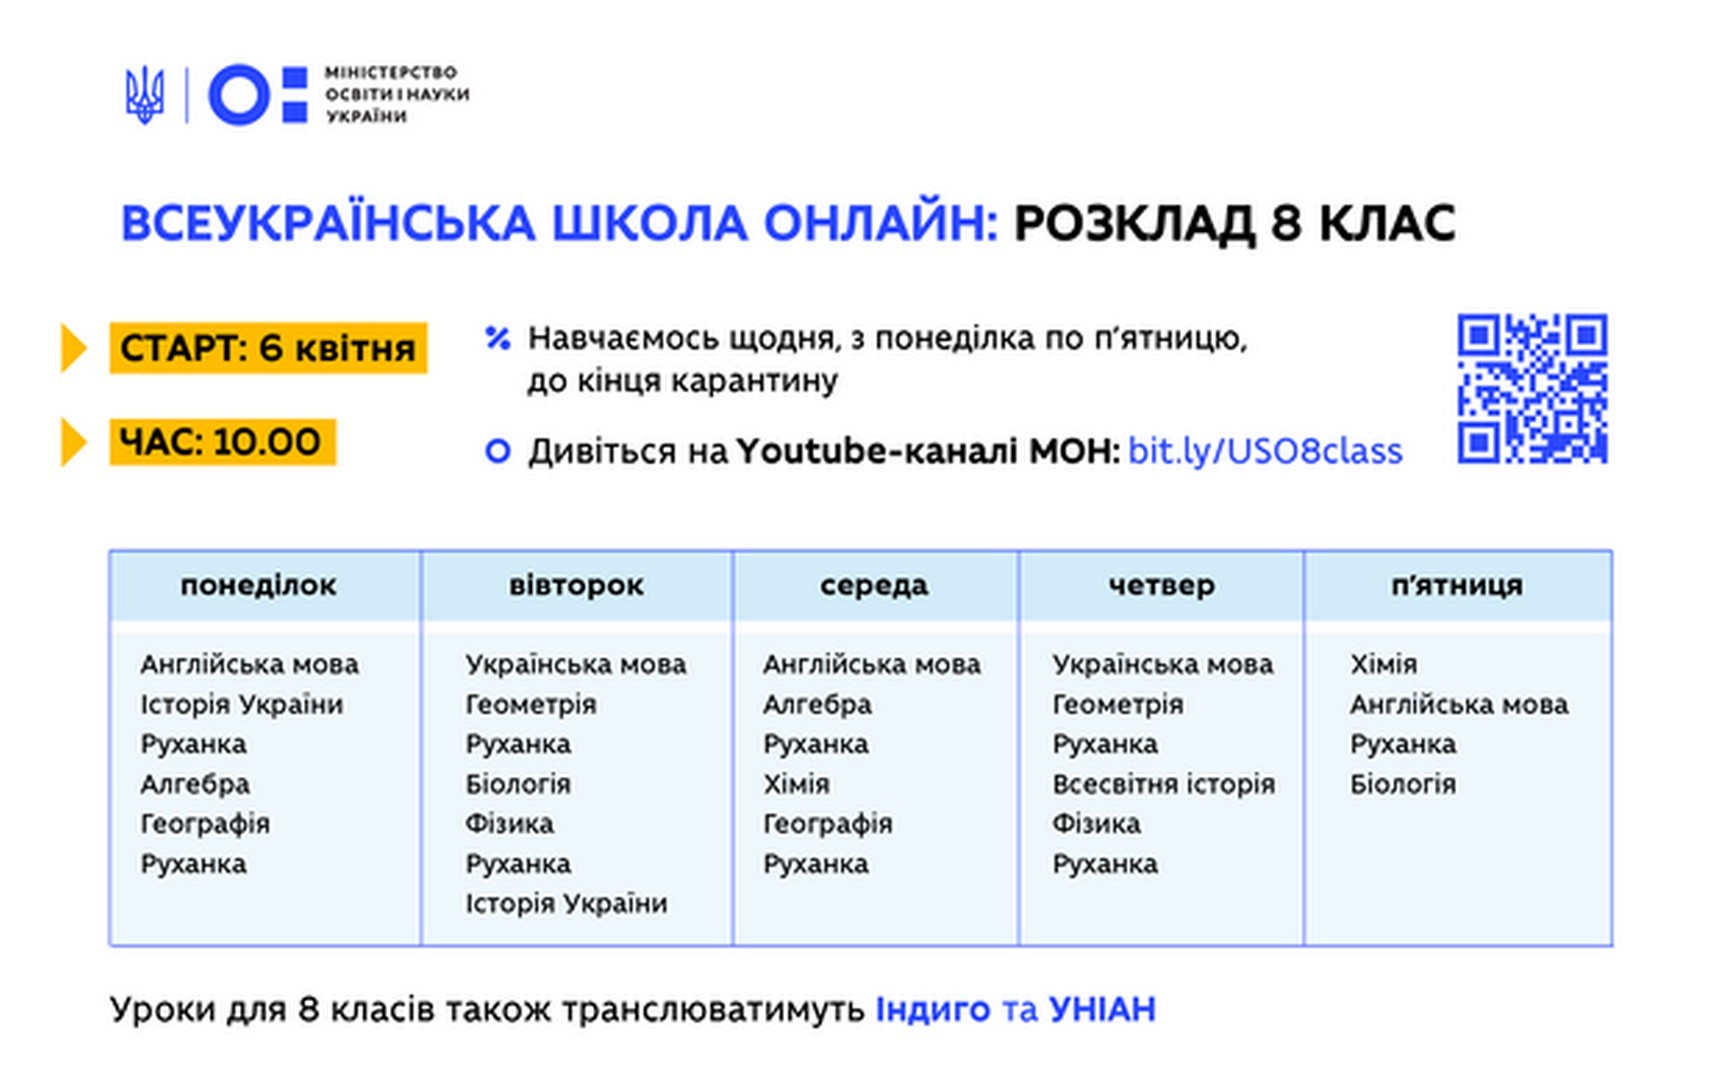 Всеукраїнська школа онлайн: розклад занять